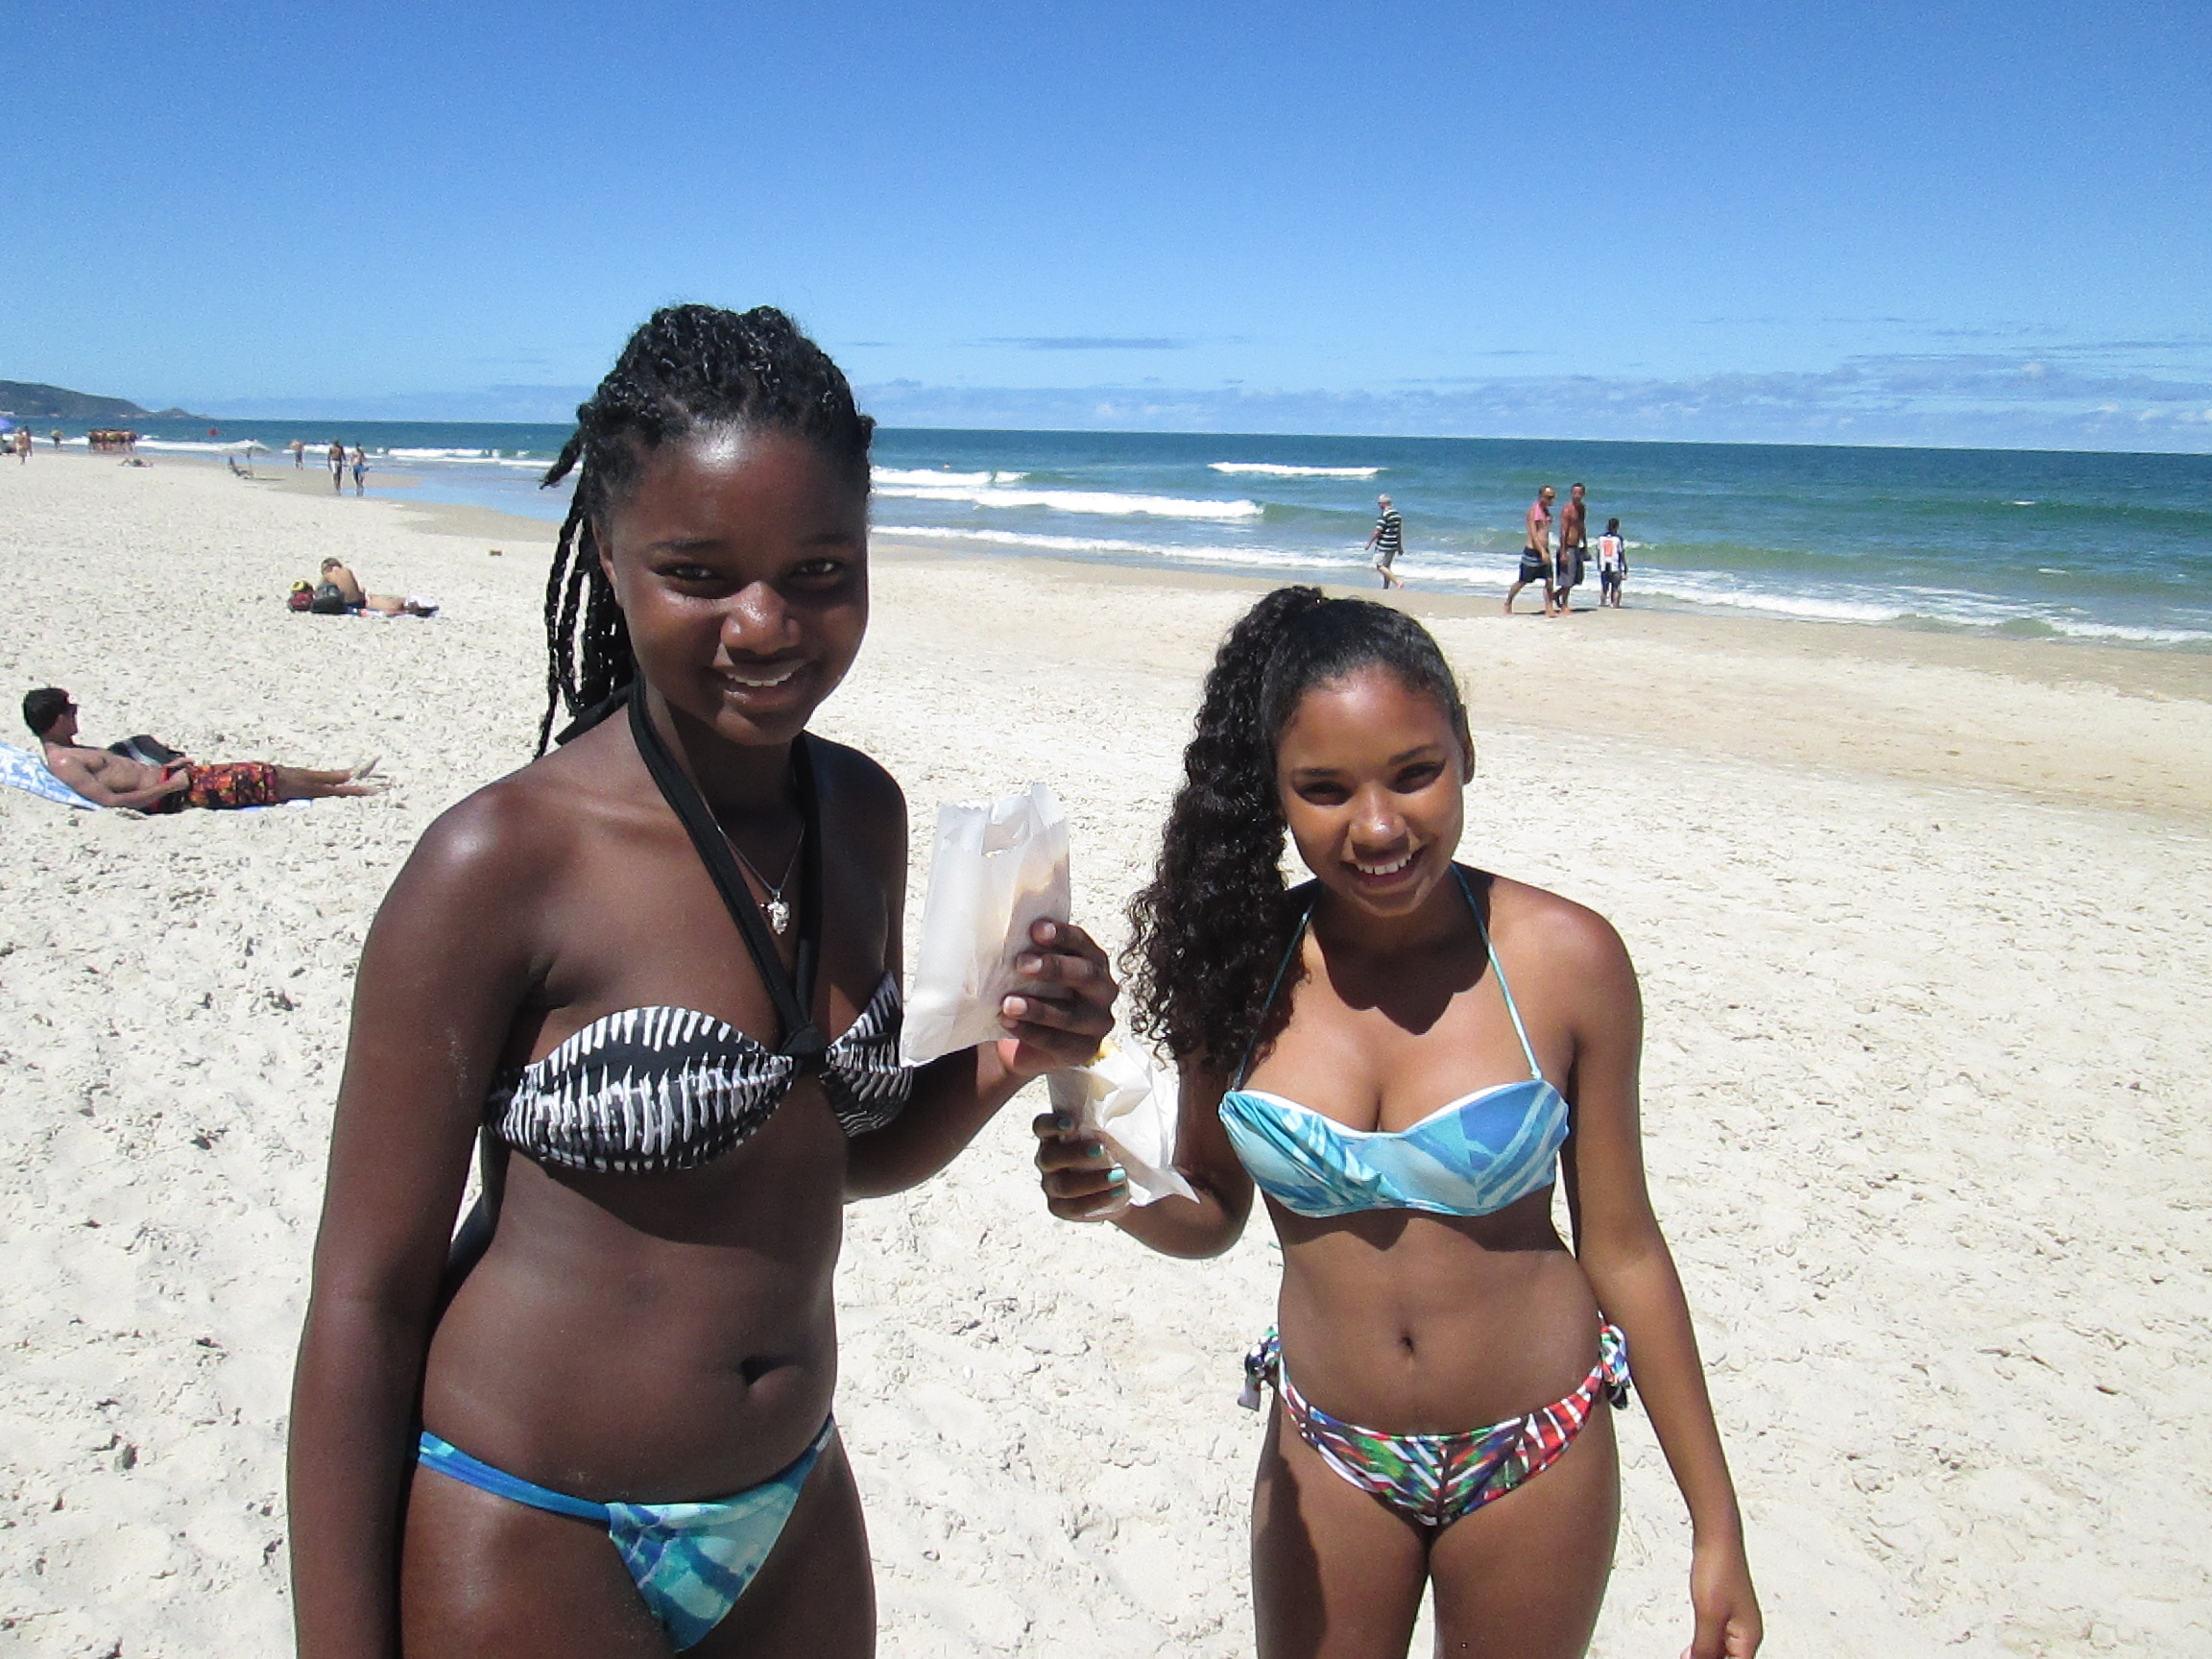 Brazilian girls in tiny bikini